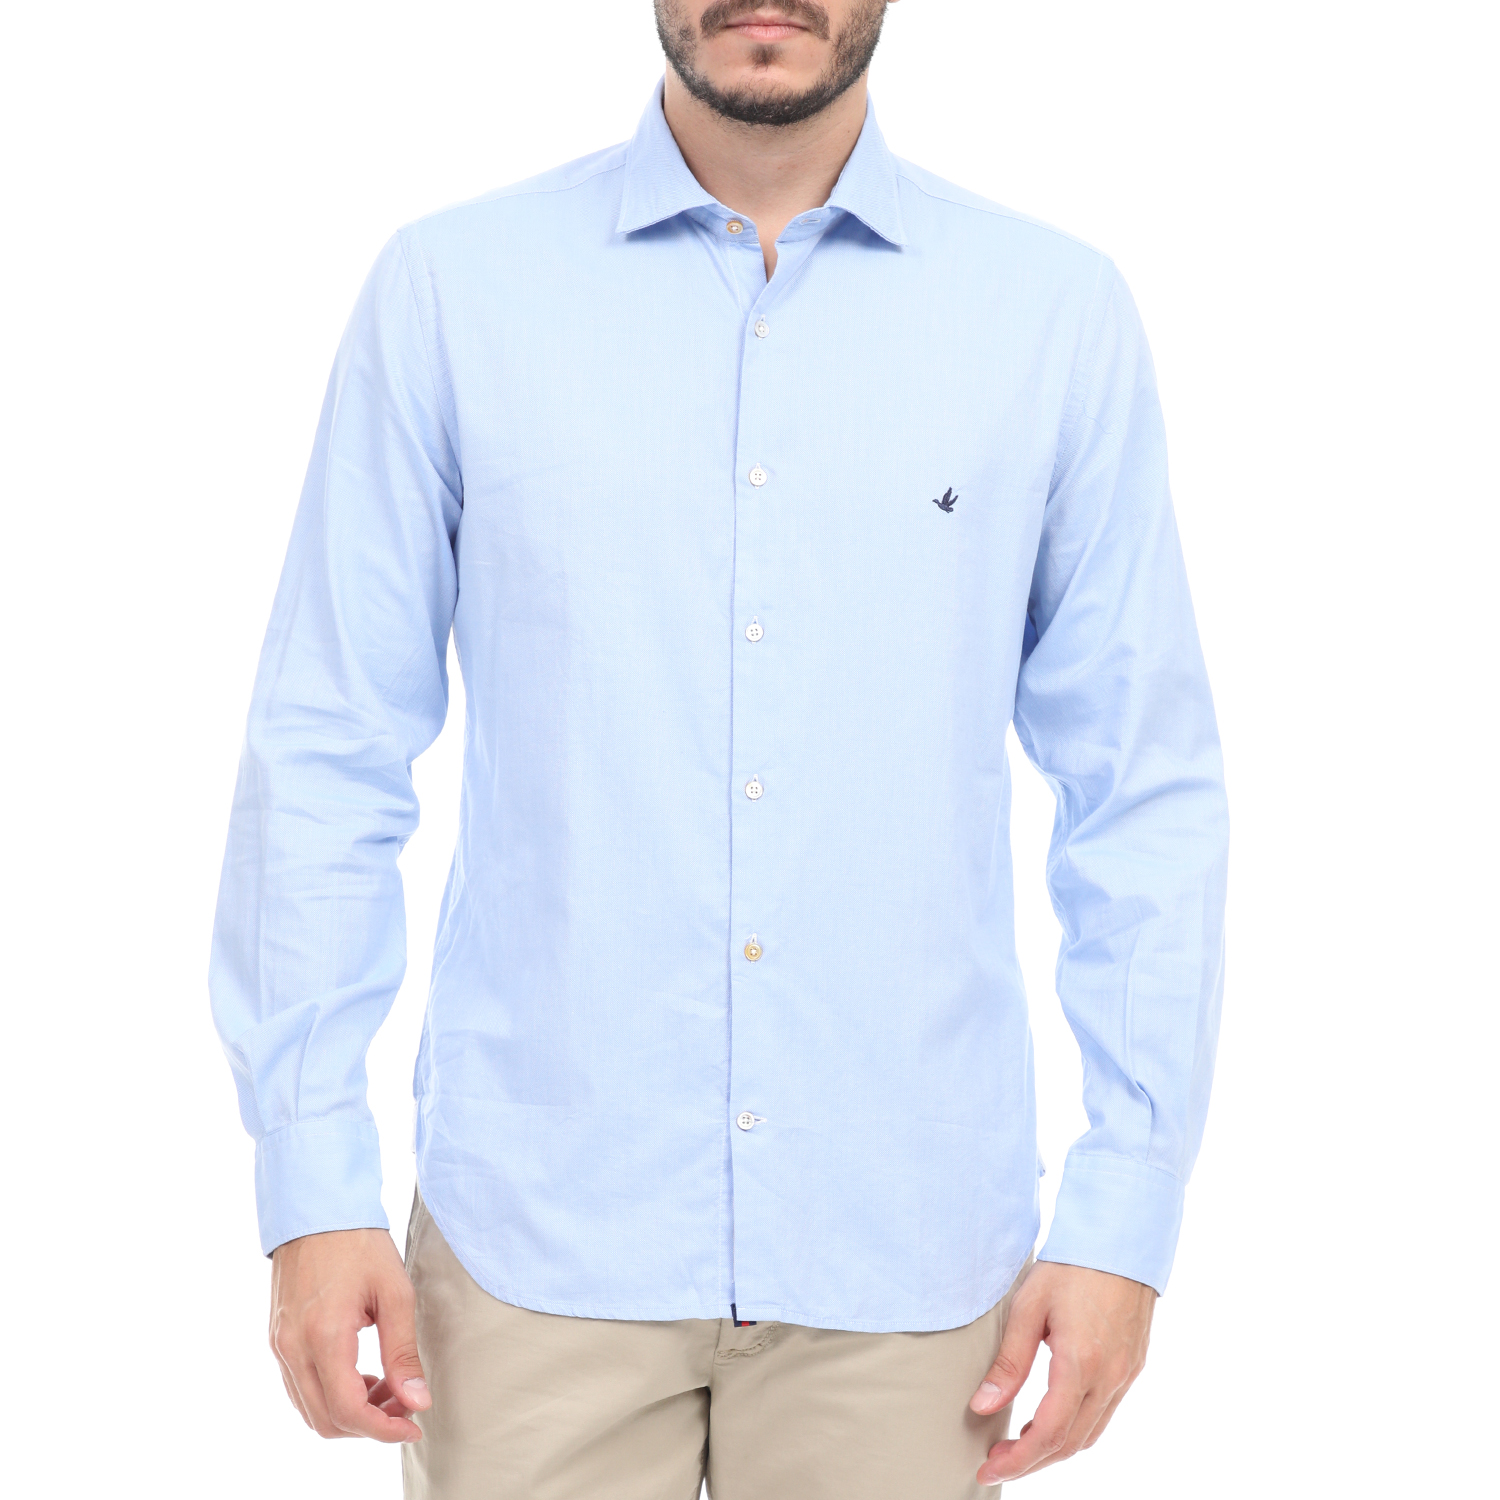 Ανδρικά/Ρούχα/Πουκάμισα/Μακρυμάνικα BROOKSFIELD - Ανδρικό πουκάμισο BROOKSFIELD μπλε